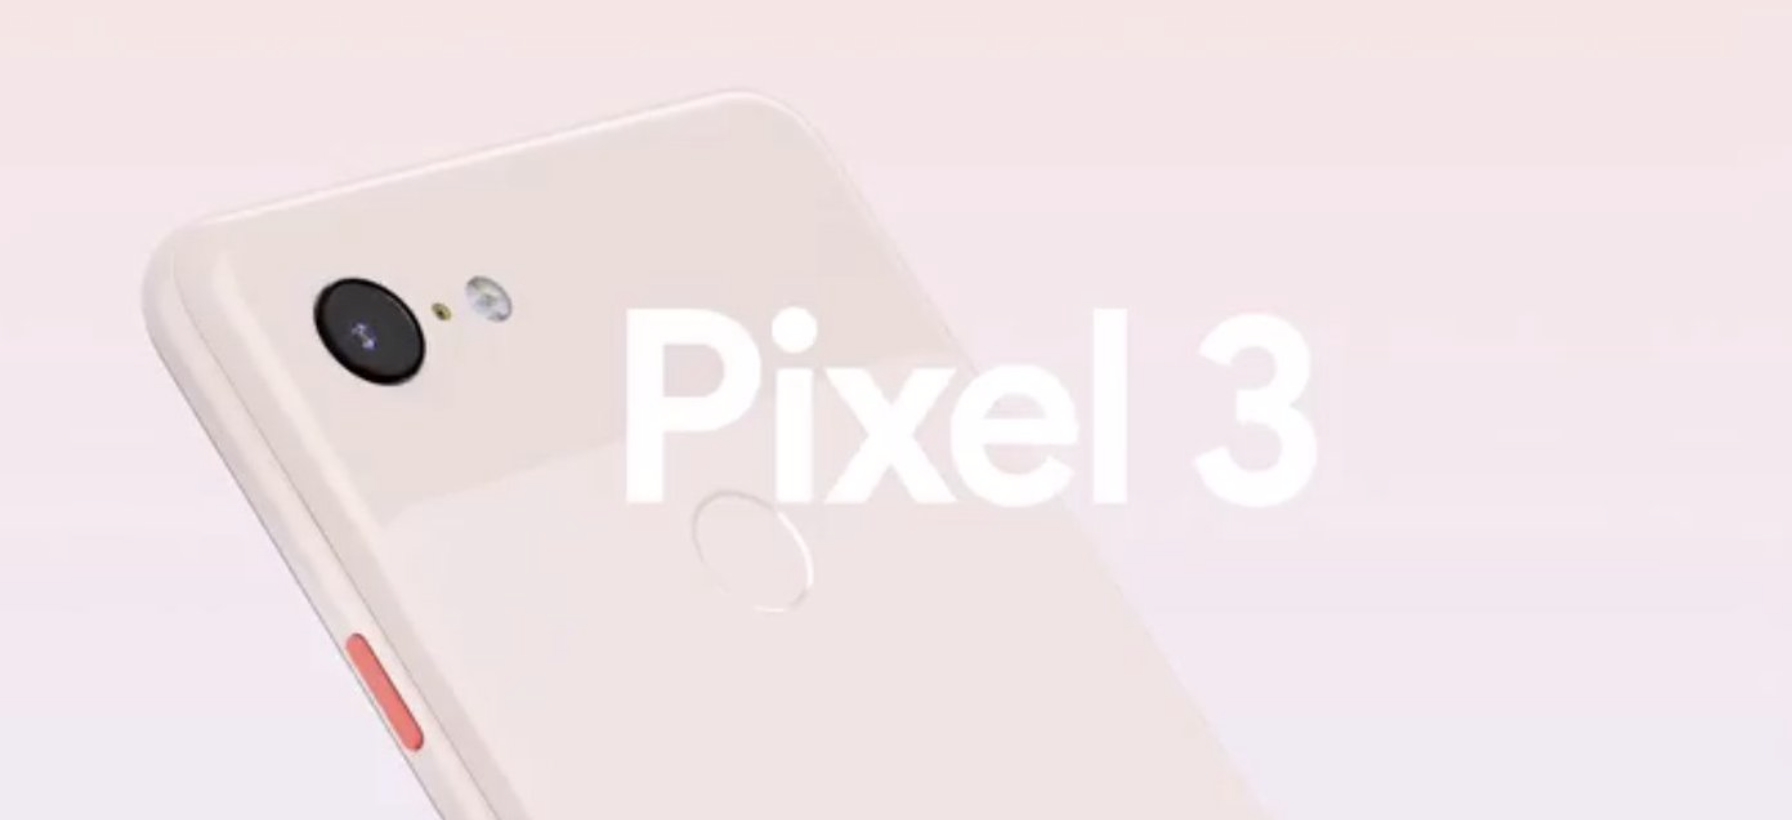 Но компания также анонсировала новый планшет под названием Pixel Slate - первый планшет Google за три года